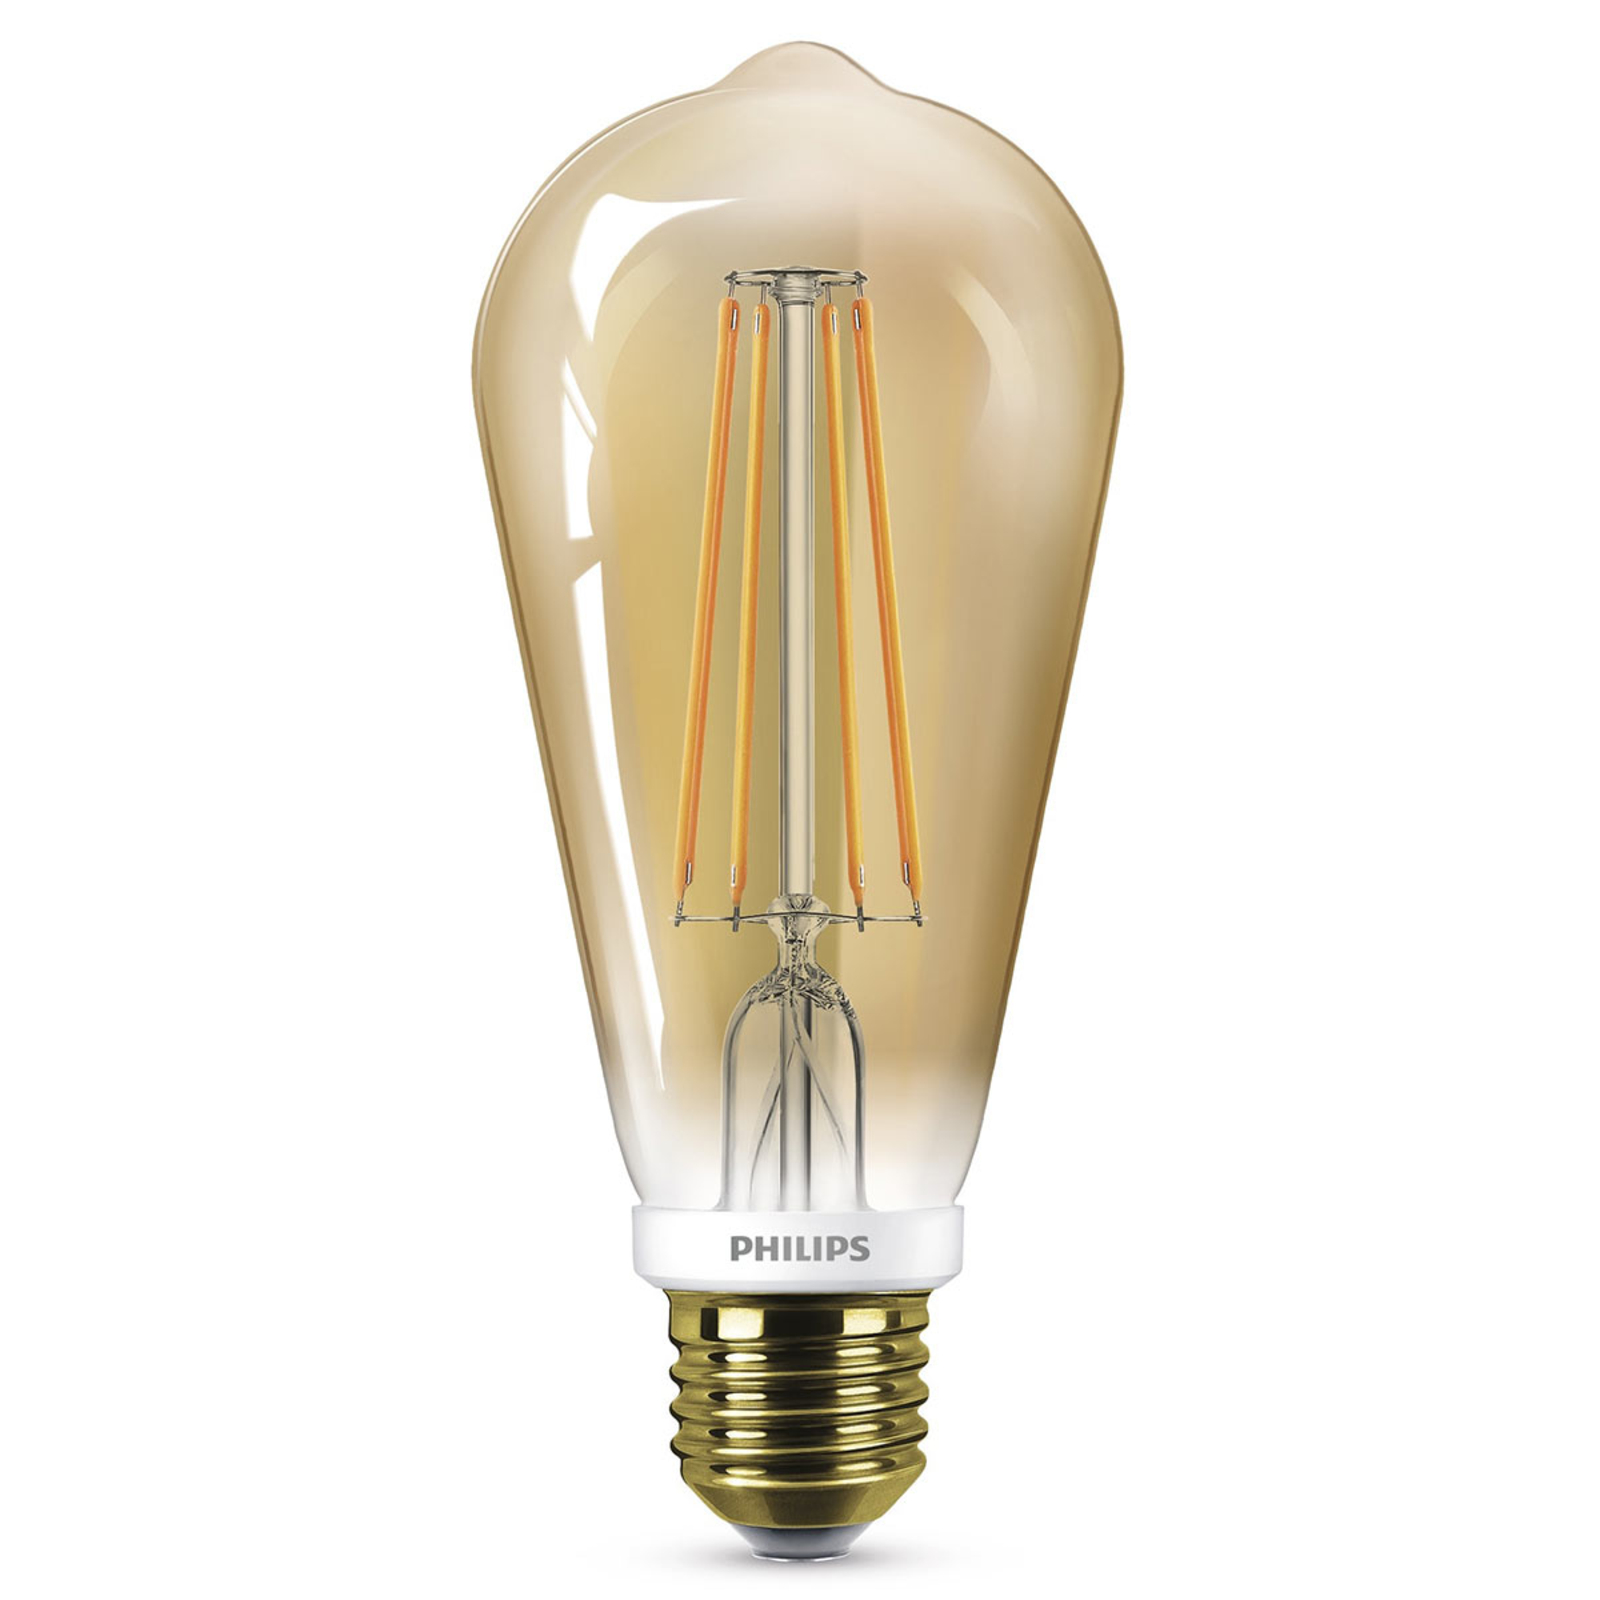 Afkeer Nieuw maanjaar rollen Philips LED lamp E27 ST64 5,5W goud, dimbaar | Lampen24.nl